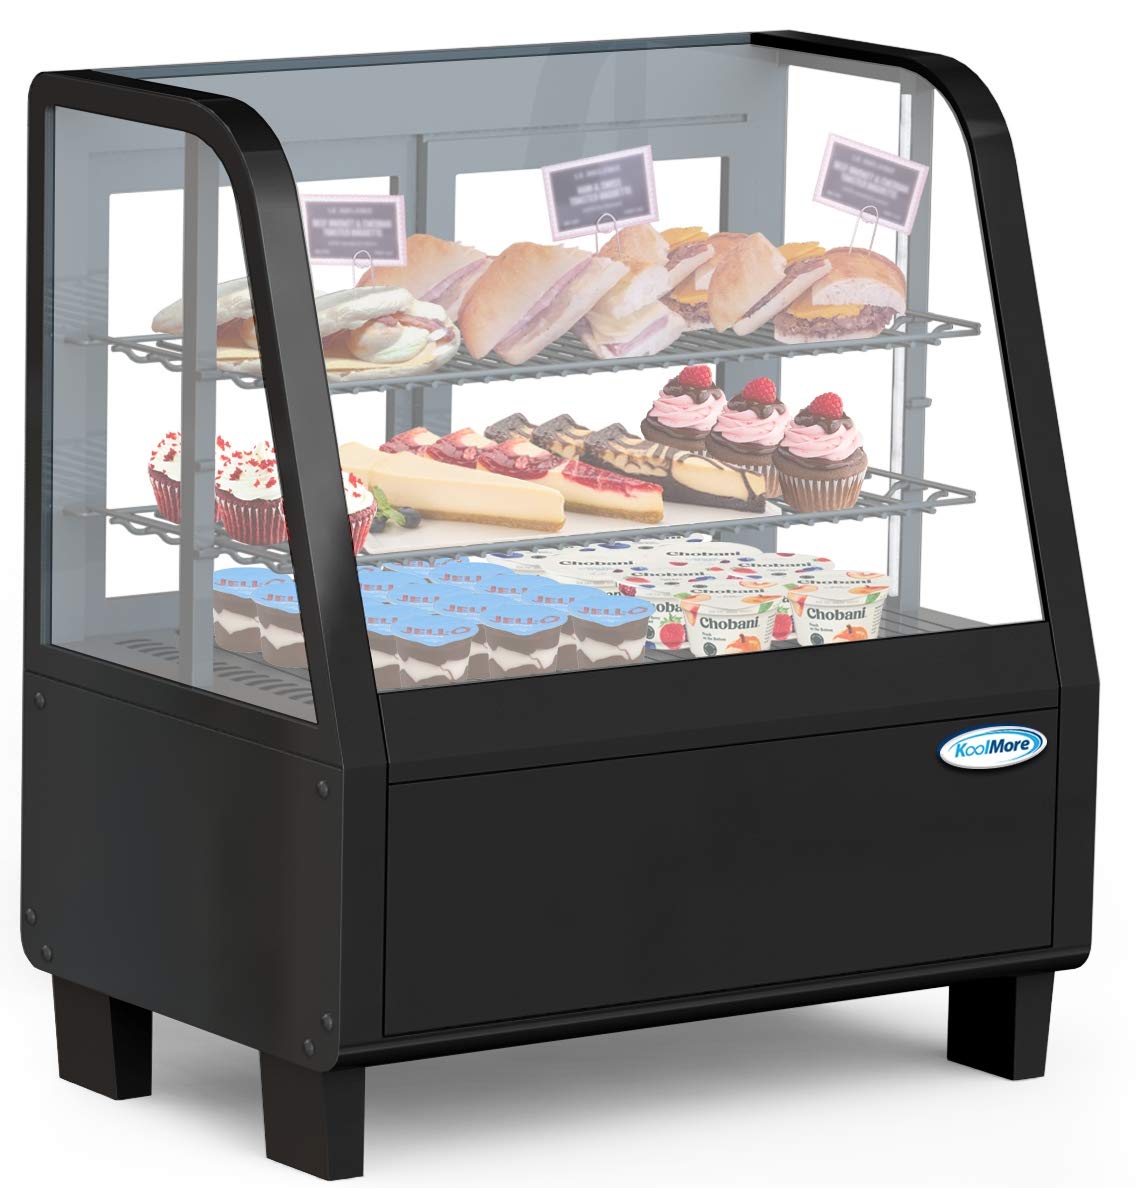 KoolMore Mostrador comercial de mostrador para refrigerador con iluminación LED - 3.6 cu. pie